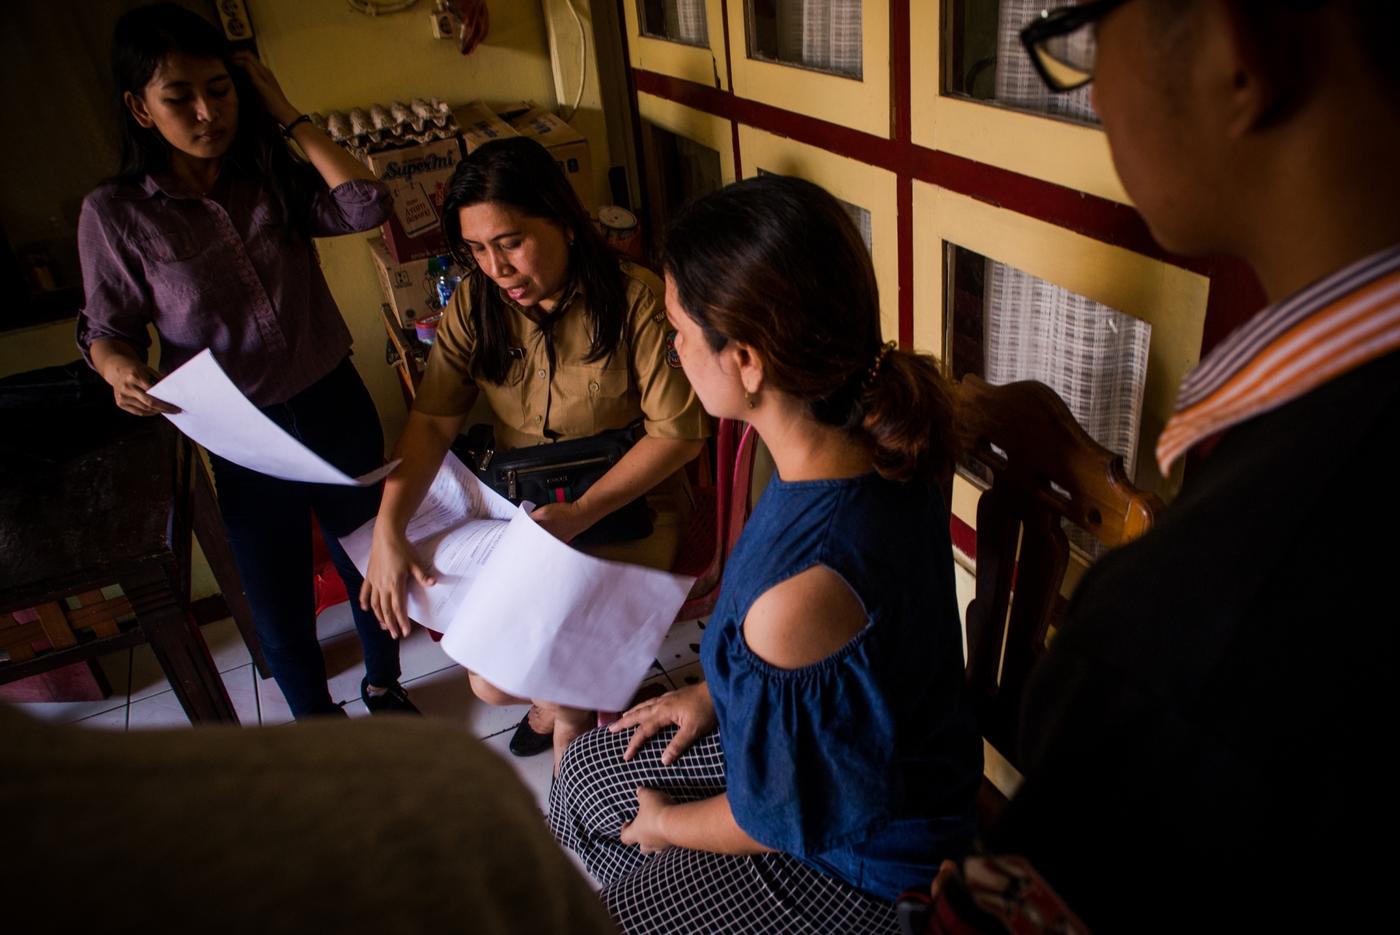 Pemerintah Kota Manado mengerahkan program KKN Mahasiswa untuk membantu Lurah dan Kepala Lingkungan dalam mengumpulkan data. Mereka mendatangi rumah warga satu per satu untuk mencatat informasi kependudukan yang diperlukan. Foto: Adwit B. Pramono/Yayasan BaKTI